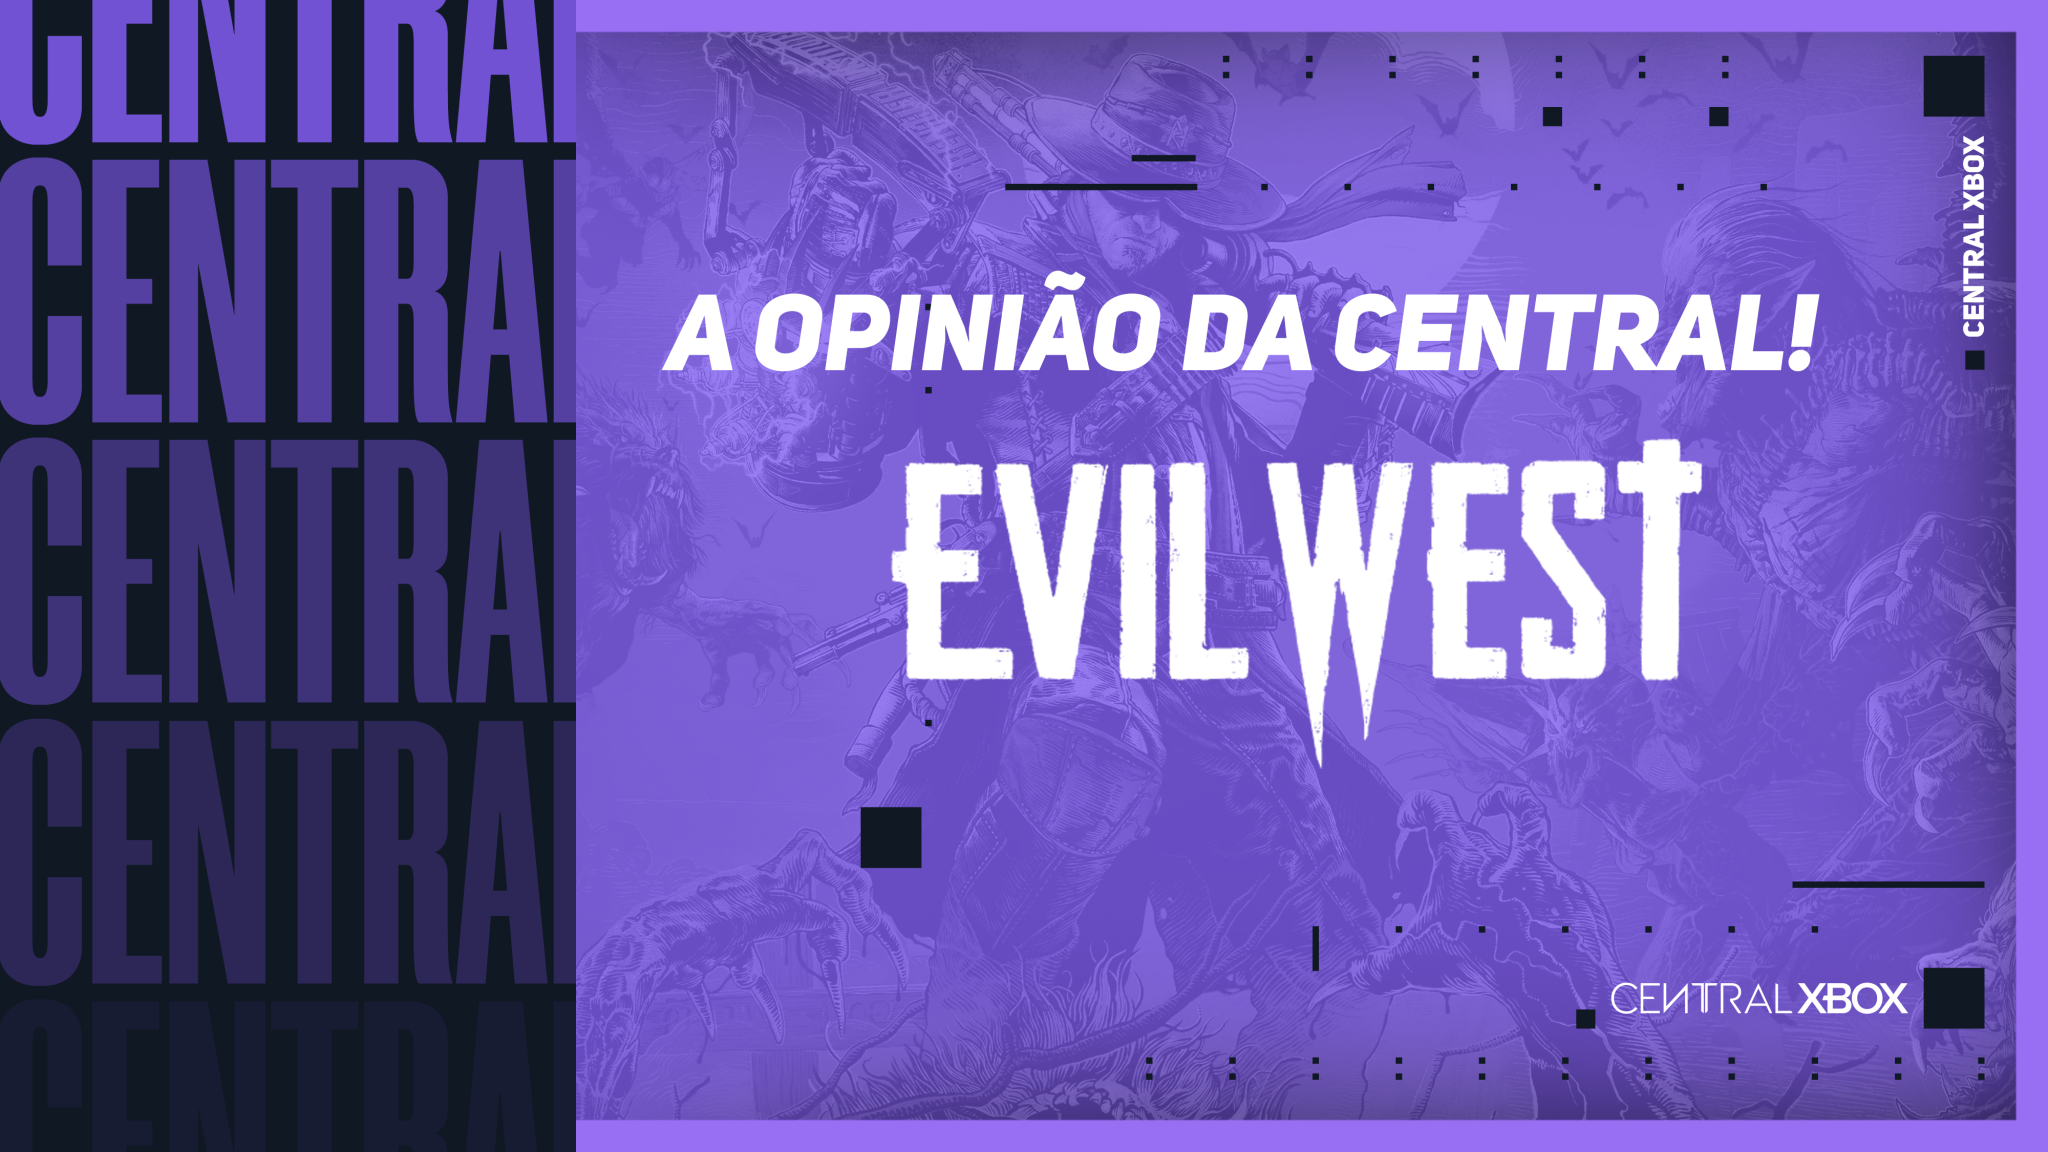 Evil West requisitos PC 